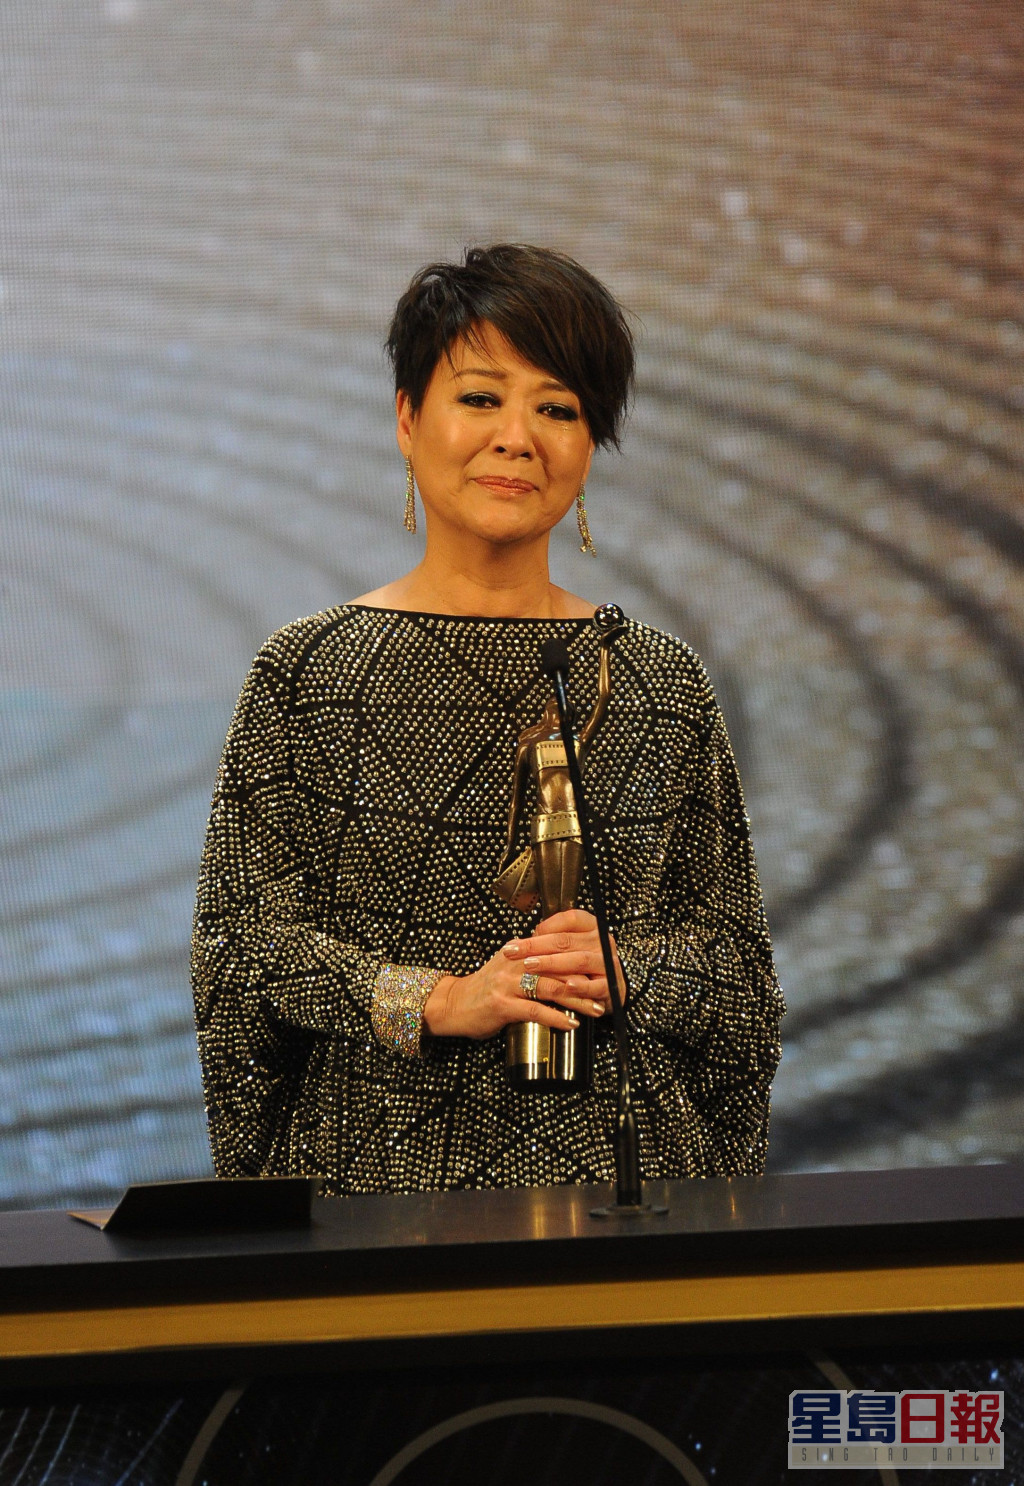 金燕玲多度奪得香港電影金像獎及台灣金馬獎的「最佳女配角」獎項。